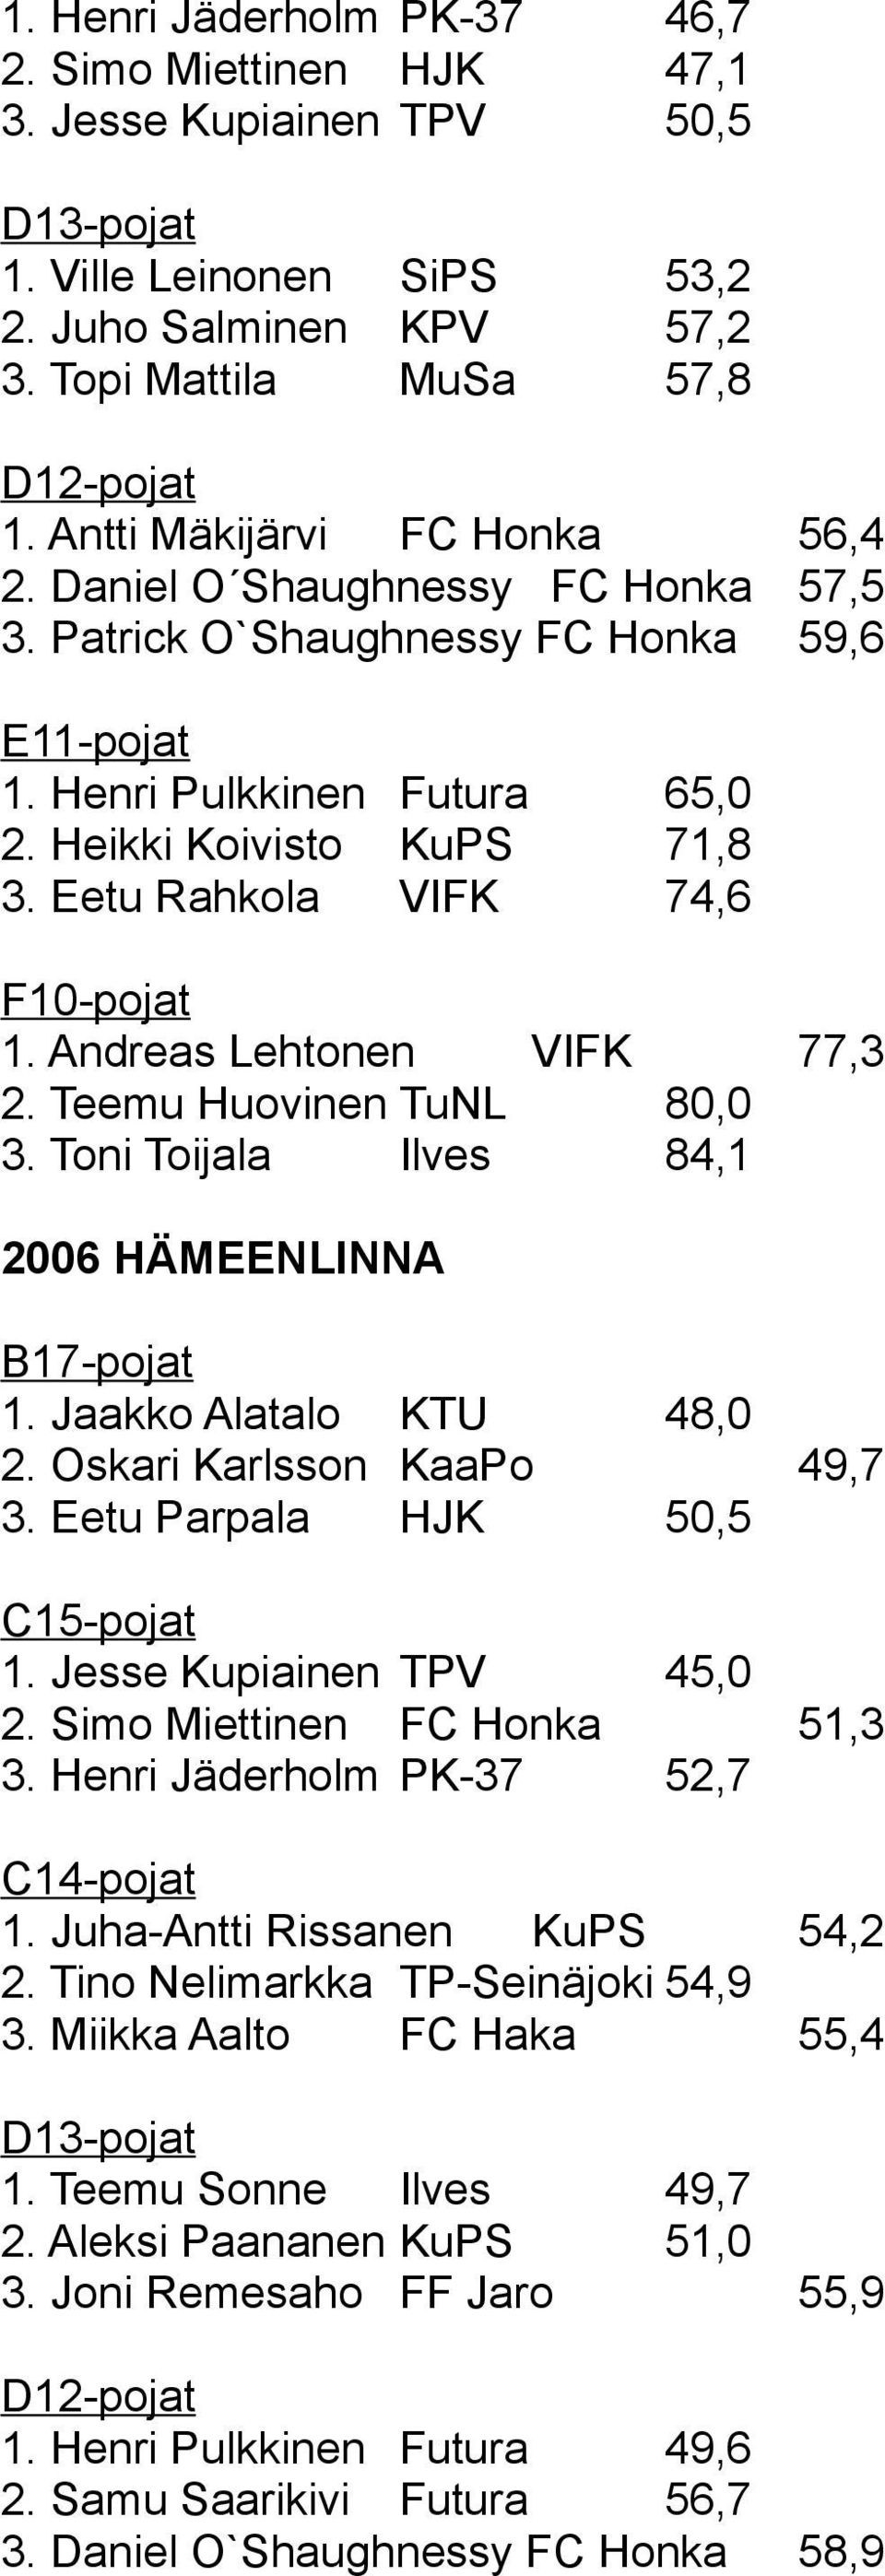 Andreas Lehtonen VIFK 77,3 2. Teemu Huovinen TuNL 80,0 3. Toni Toijala Ilves 84,1 2006 HÄMEENLINNA 1. Jaakko Alatalo KTU 48,0 2. Oskari Karlsson KaaPo 49,7 3. Eetu Parpala HJK 50,5 1.